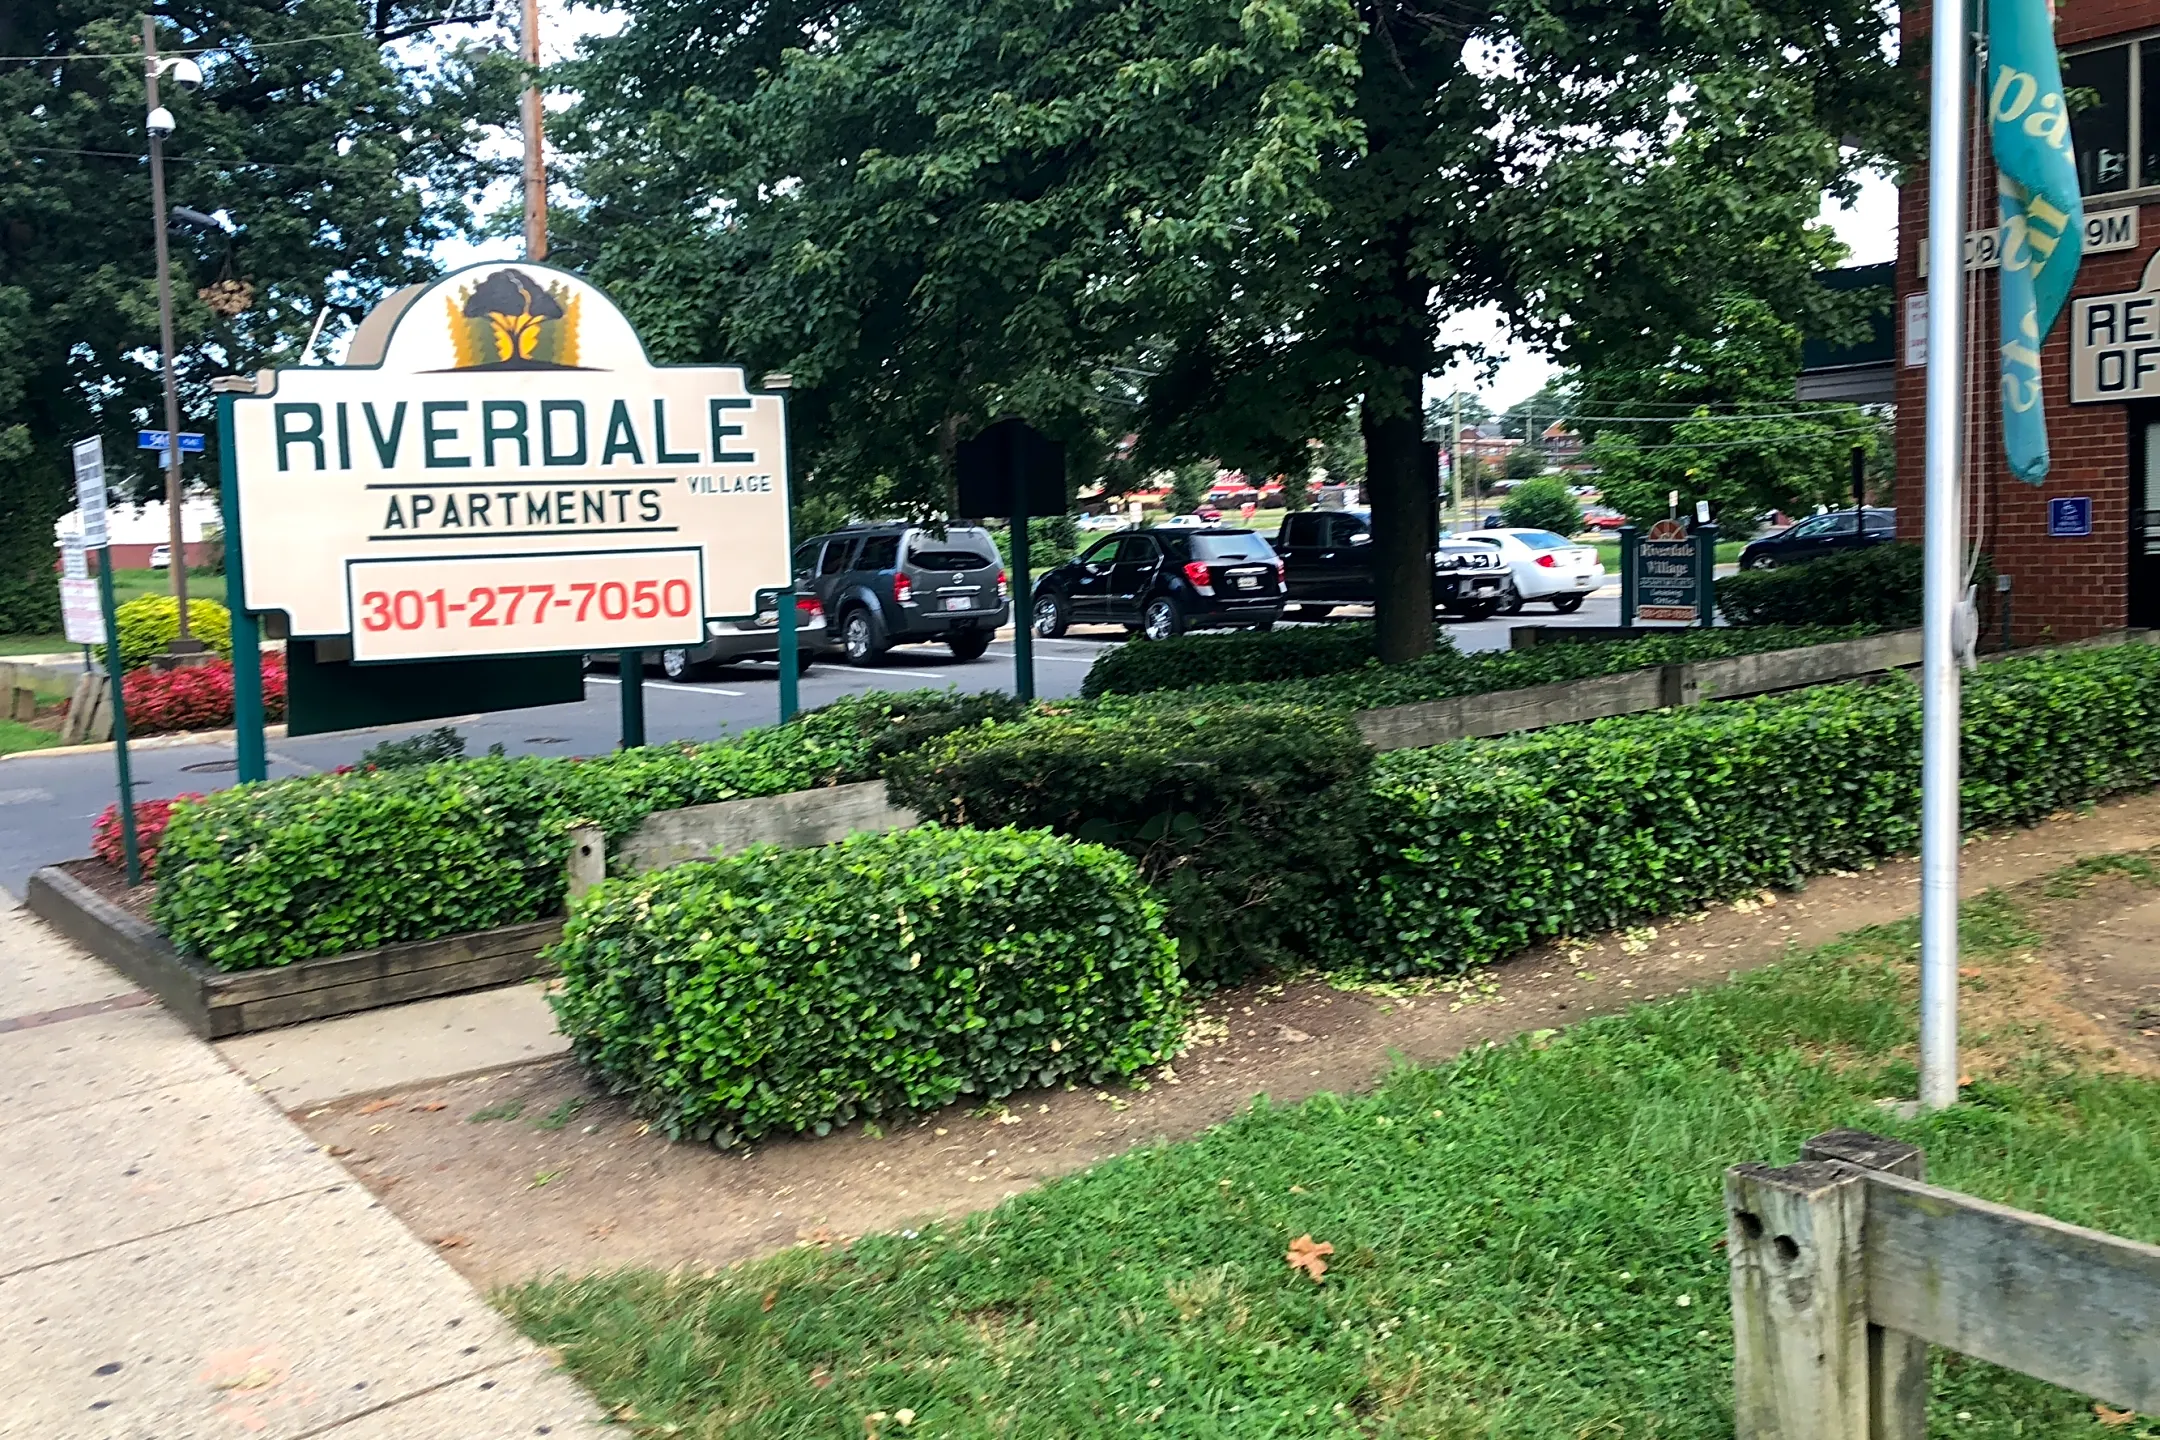 Pool - Riverdale Village Apartments - Riverdale Park, MD